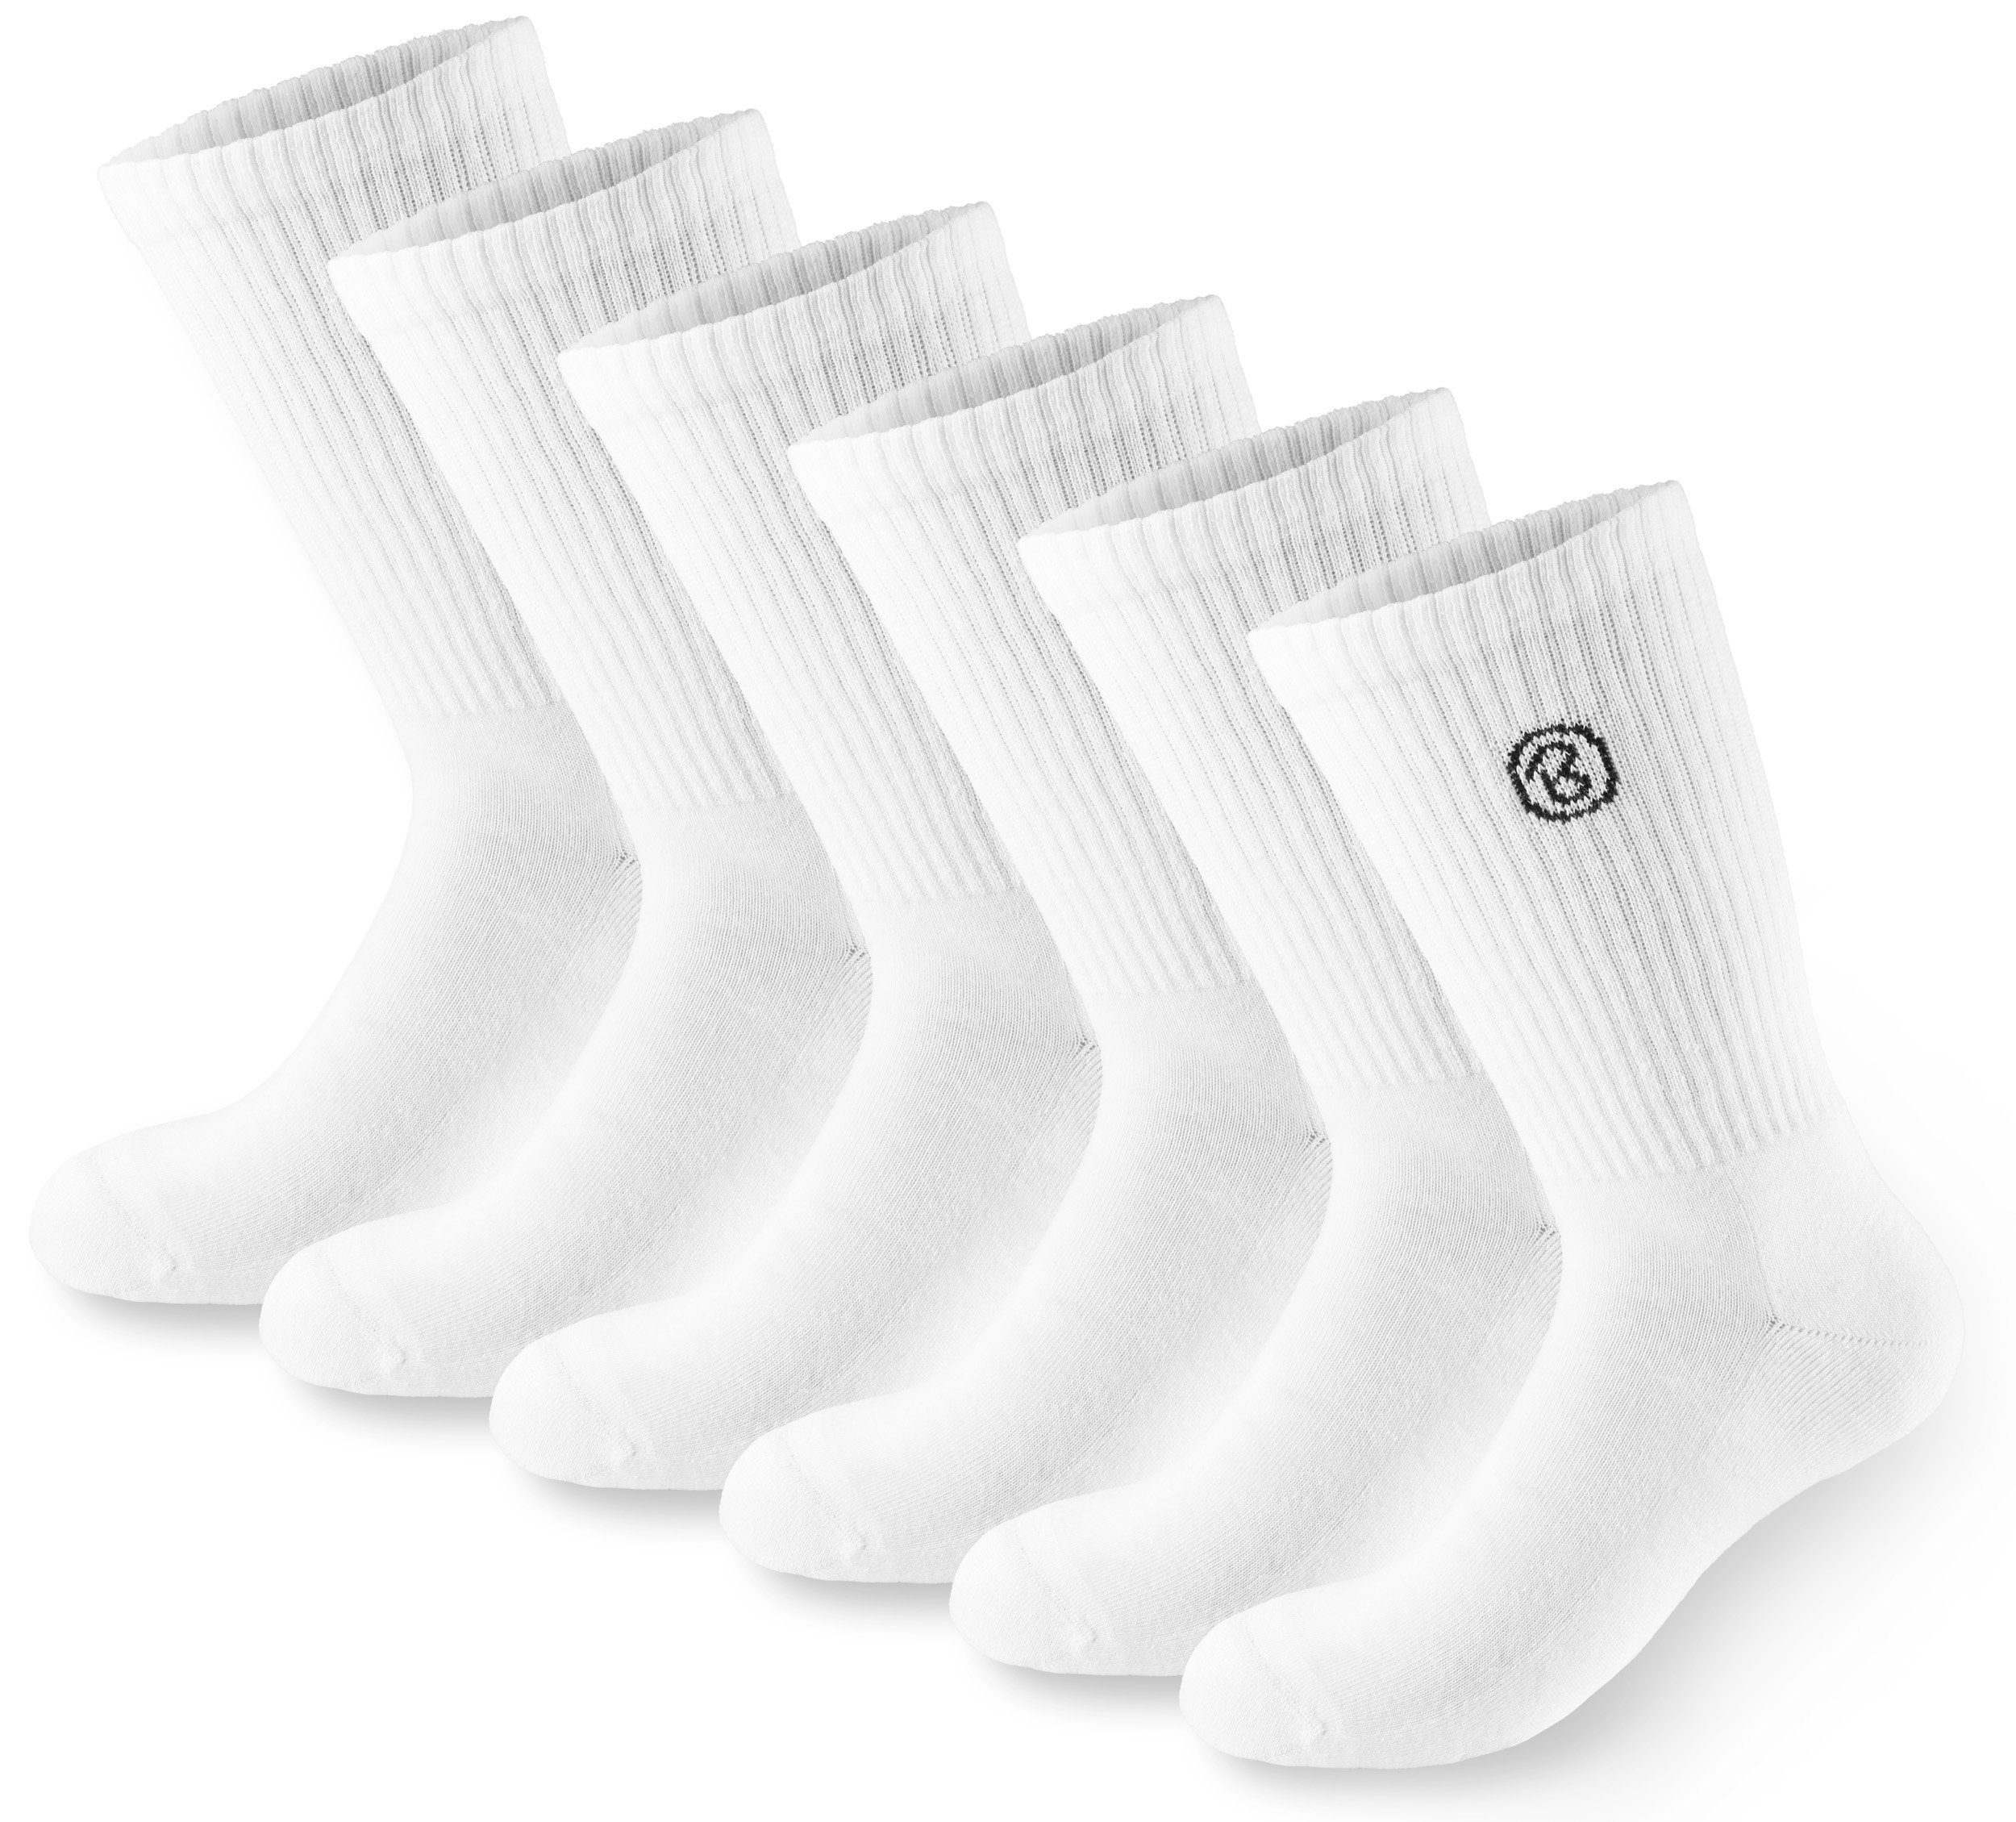 BRUBAKER Tennissocken Lange Sportsocken für Herren und Damen (Set, 6 Paar) Unisex Fitness Socken aus Baumwolle und Polyester - Crew Socks - Baumwollsocken Weiß